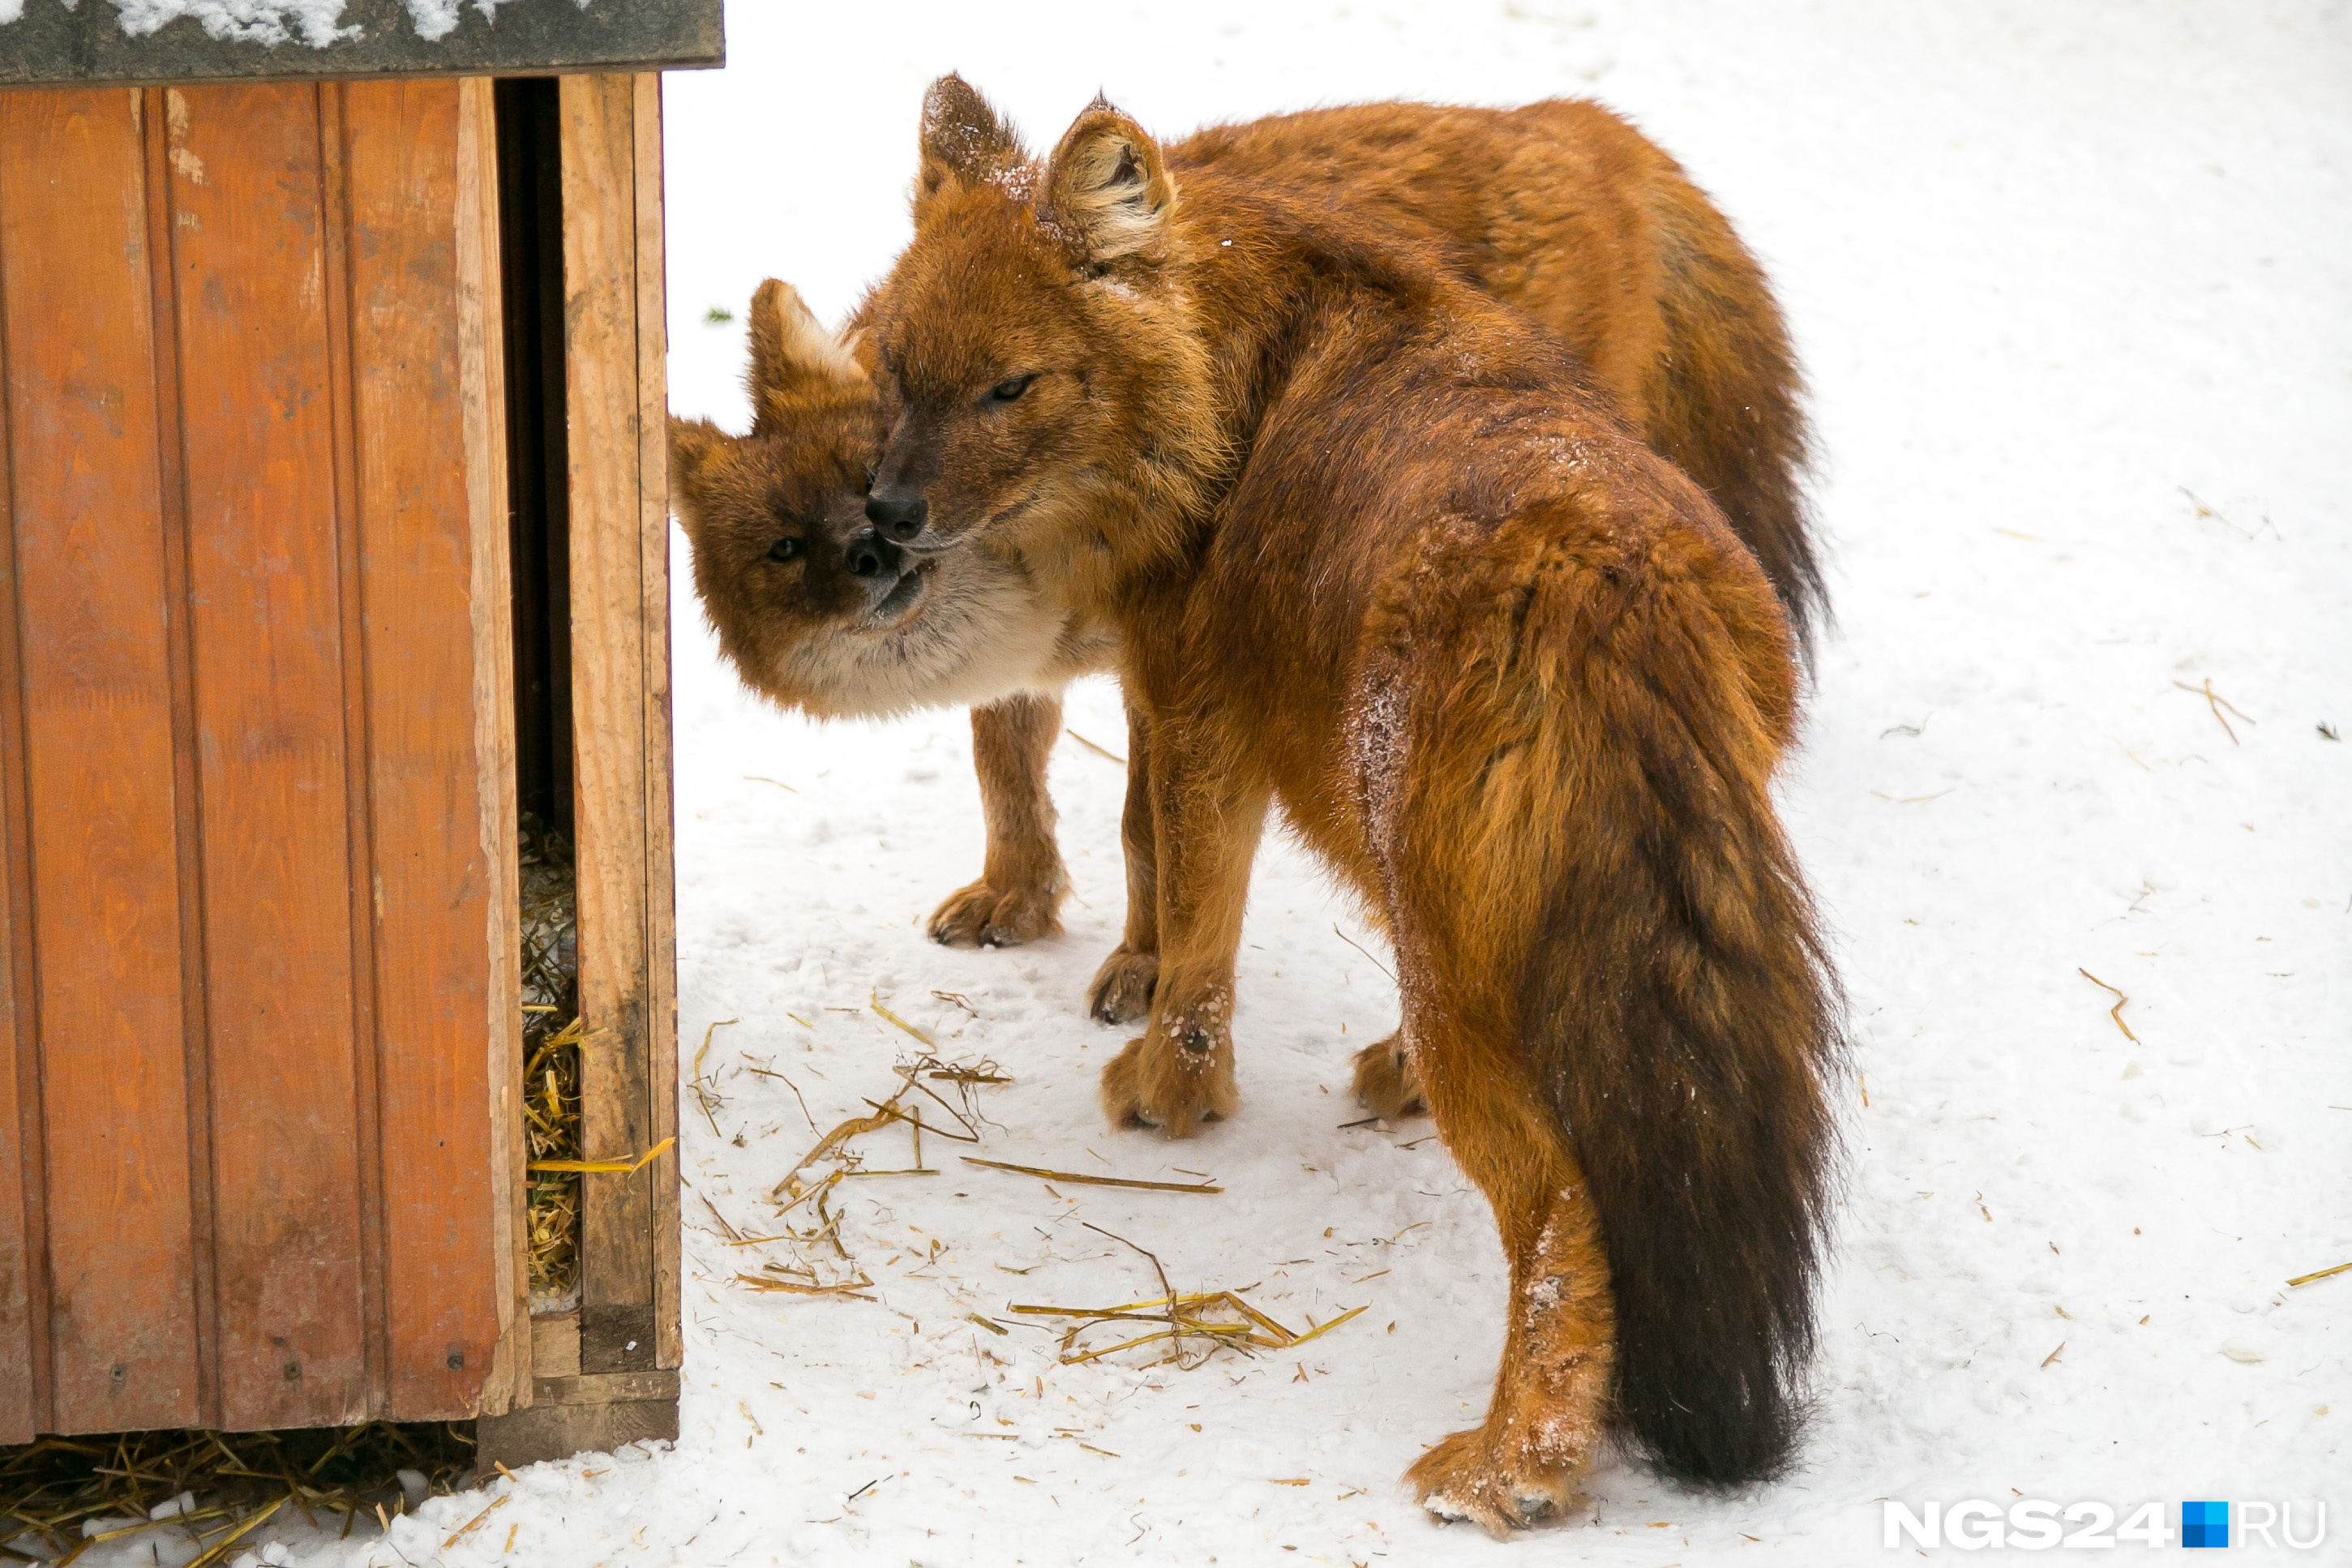 Несмотря на кажущуюся милоту, рыжие волки — опасные и грозные хищники, которые преследуют свою жертву до последнего